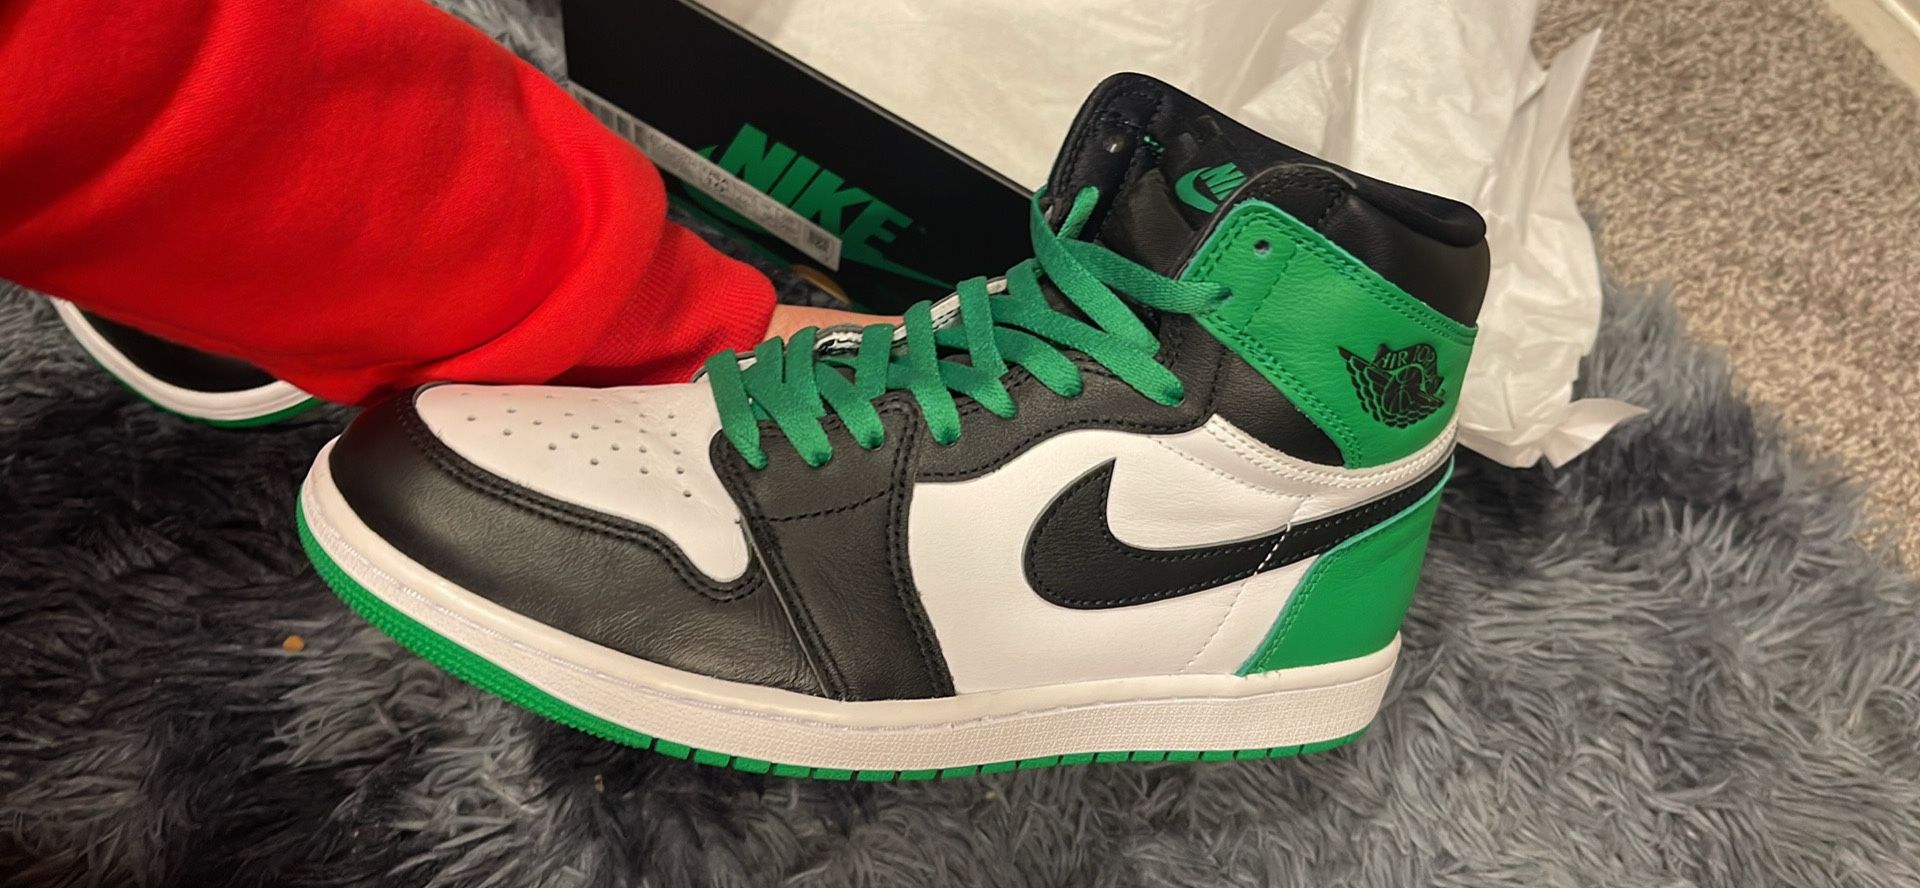 Jordan 1 Lucky Green/ Size 10.5/170$